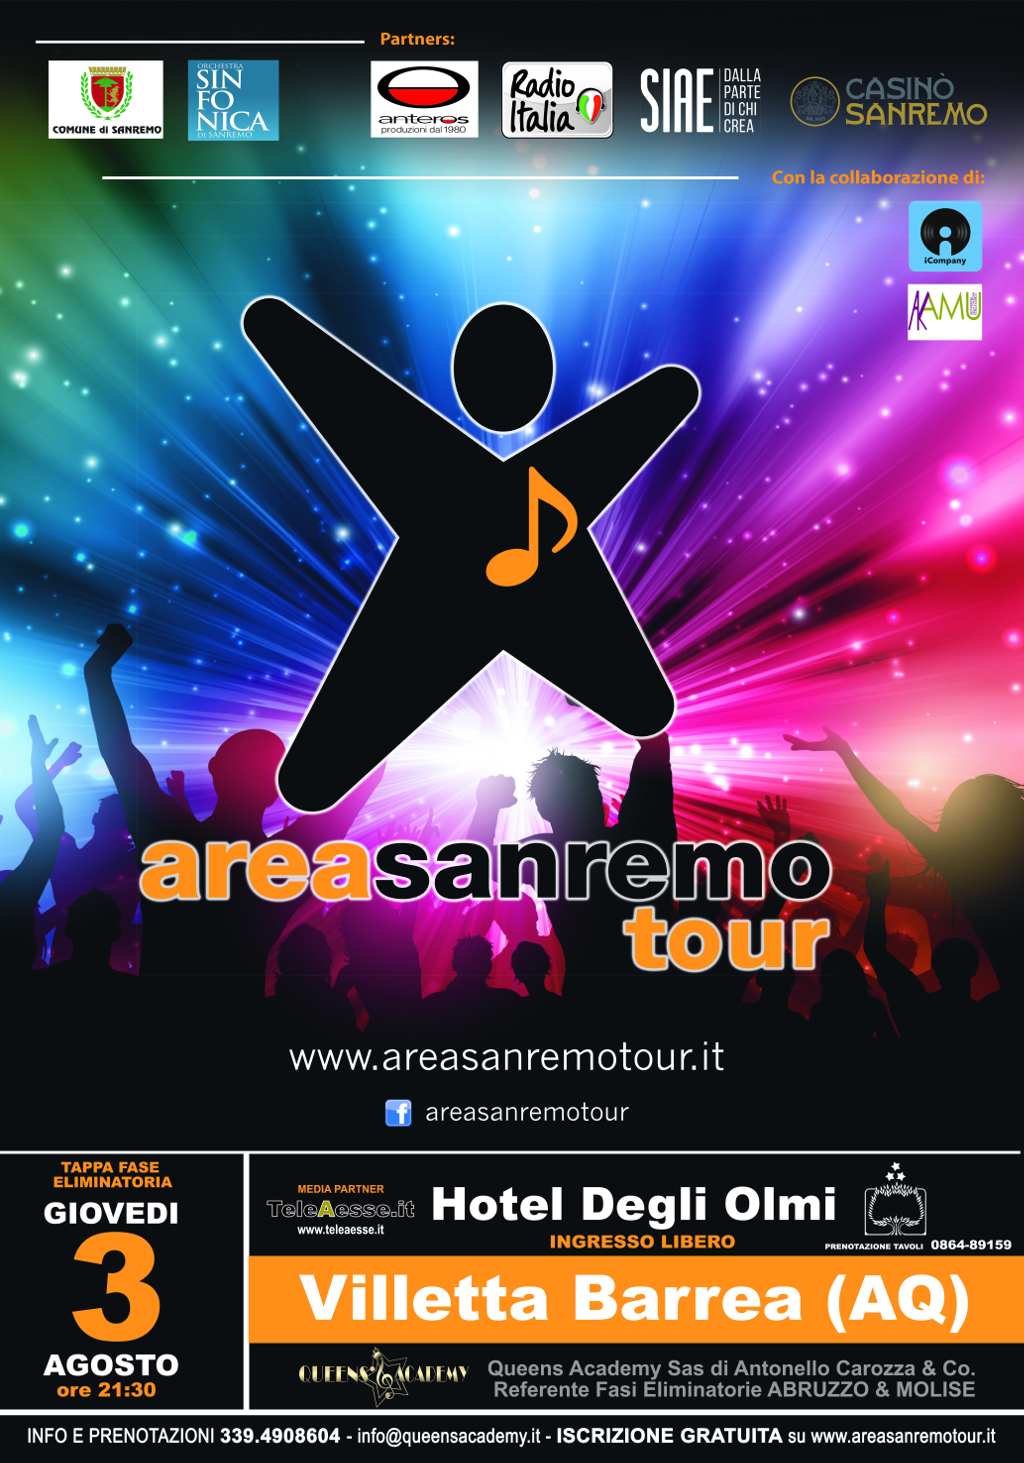 Area SanremoTour 3 agosto 2017 Villetta Barrea Hotel degli Olmi